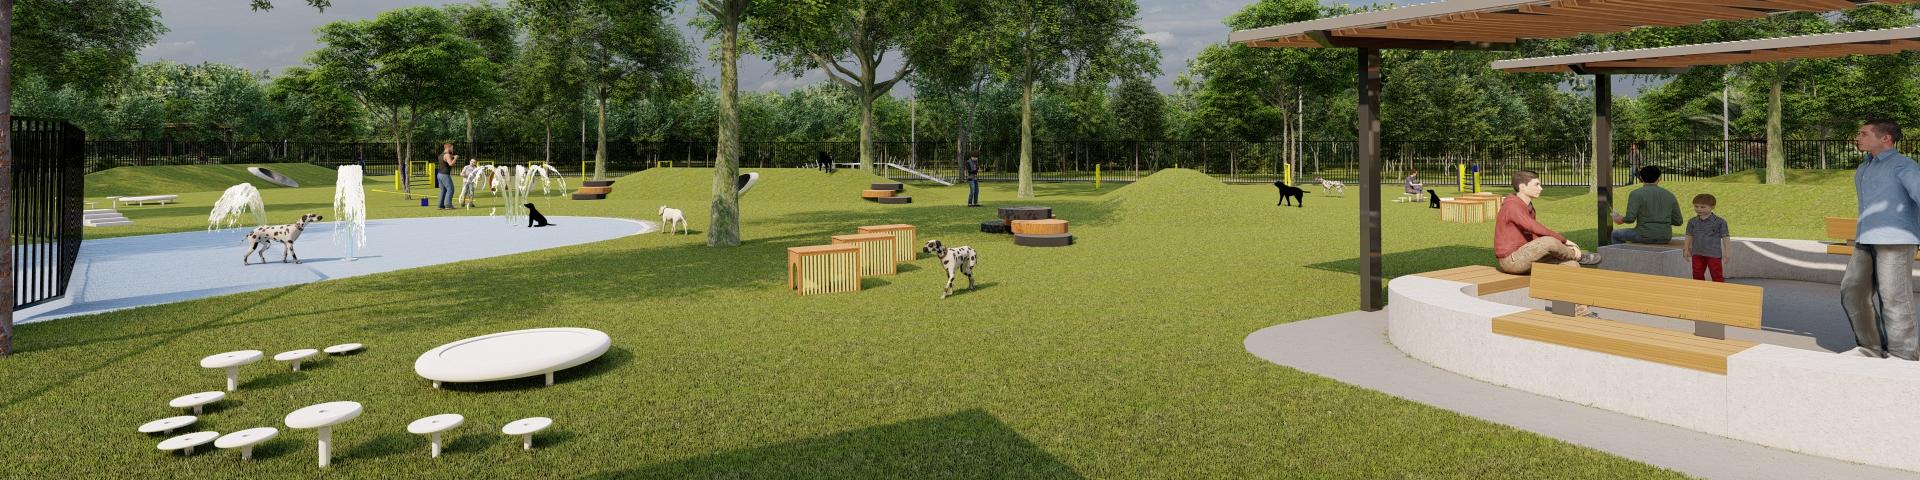 Zuccoli dog park render